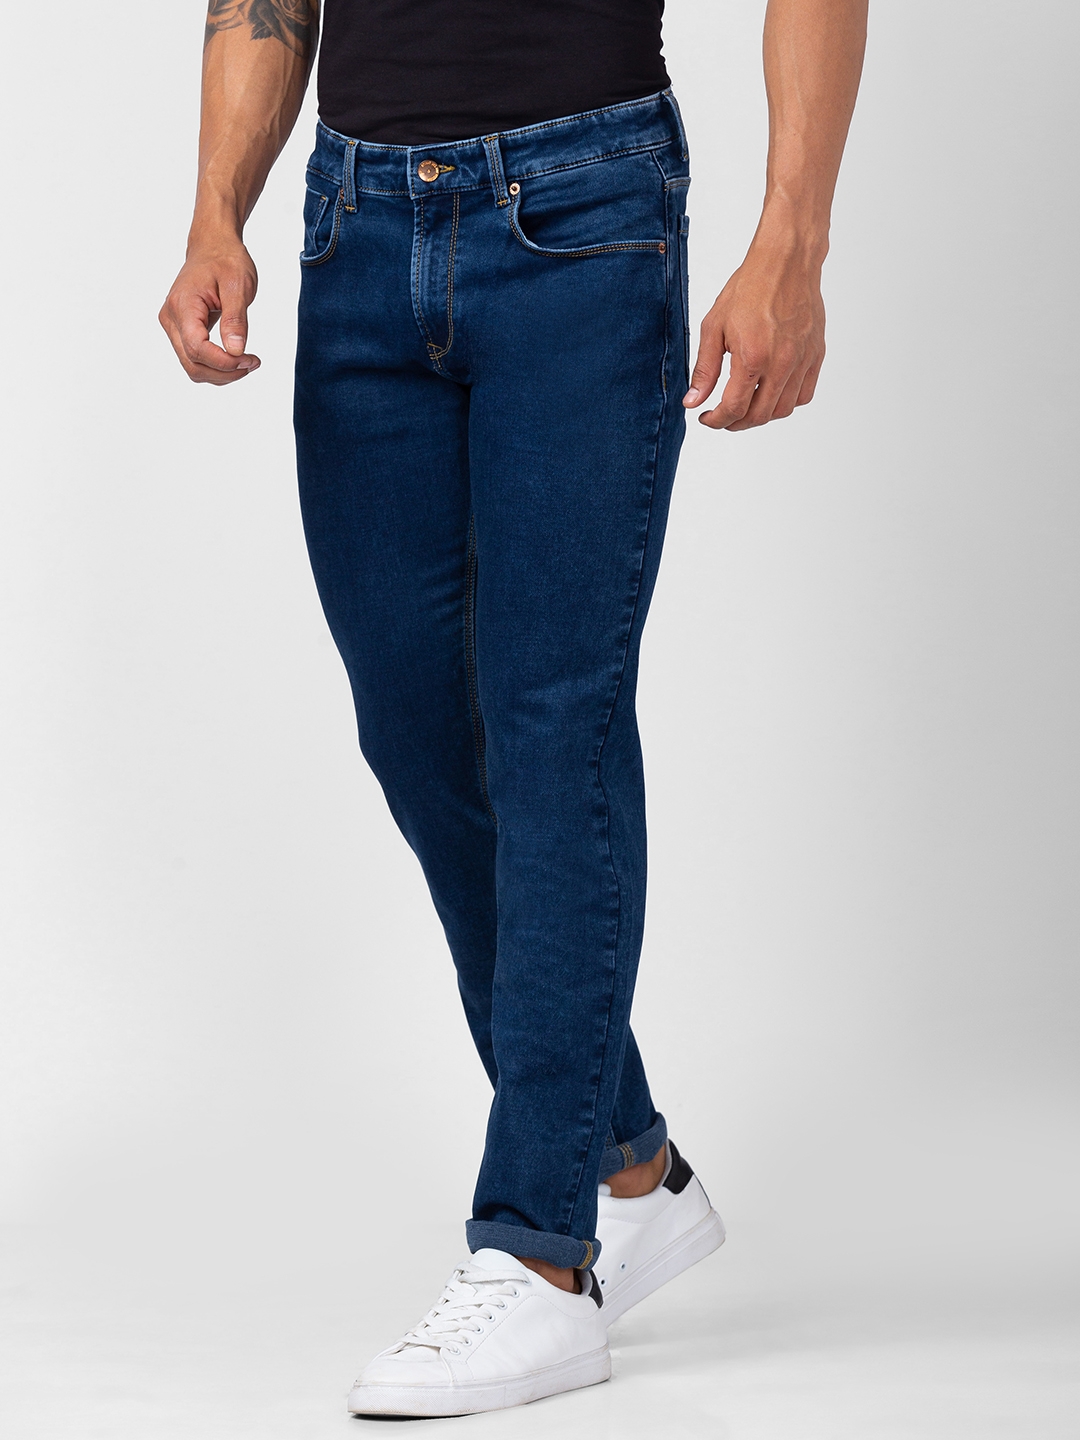 spykar | Men's Blue Cotton Jeans 3